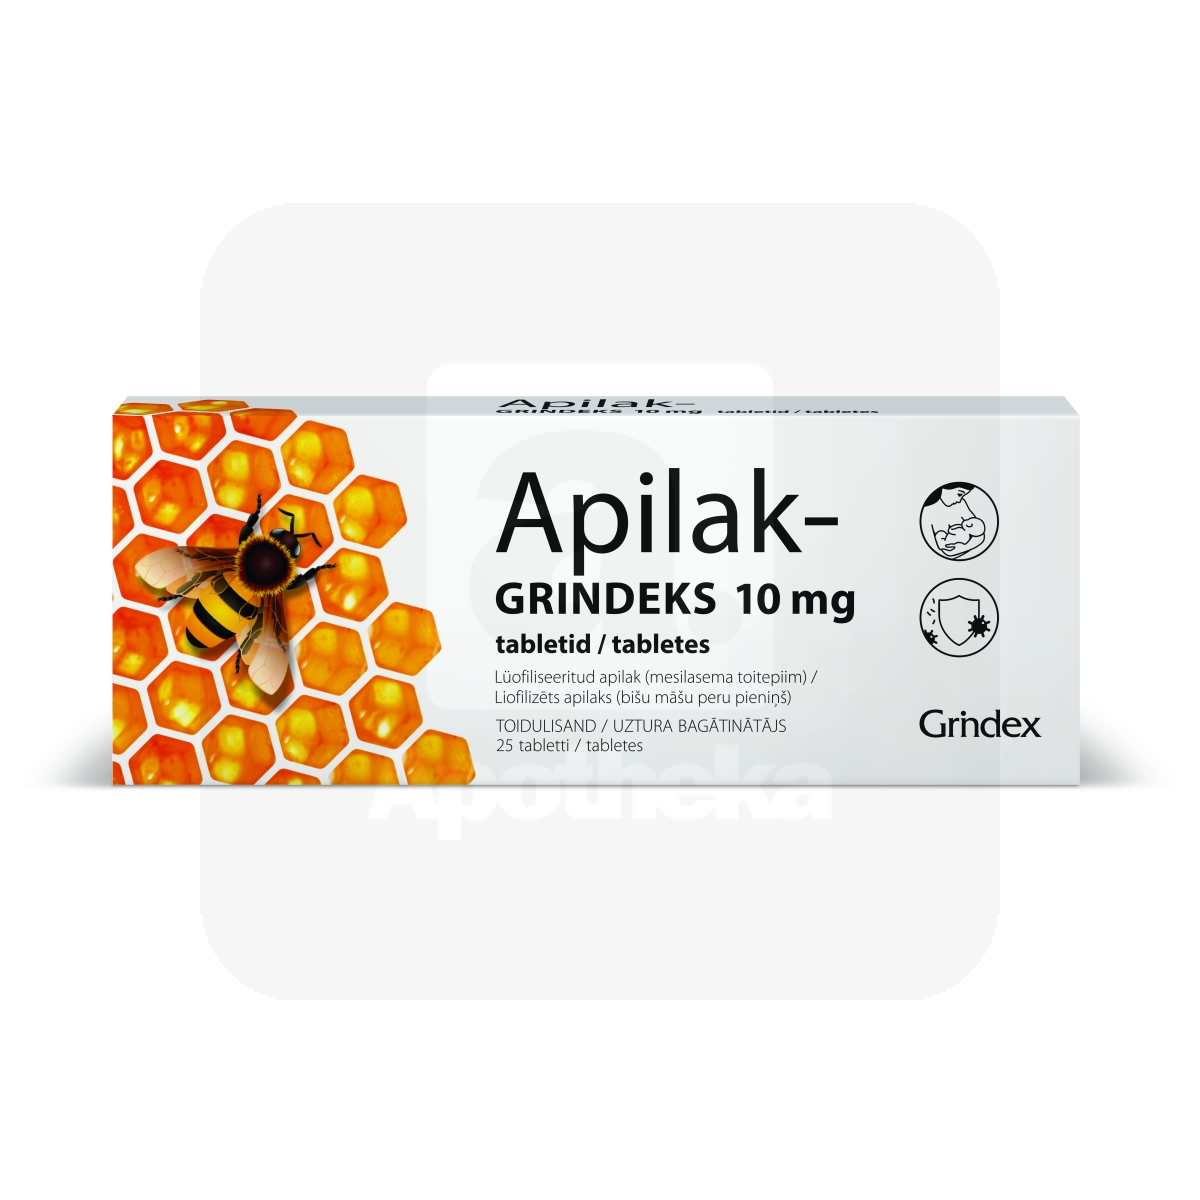 APILAK-GRINDEKS TBL 10MG N25